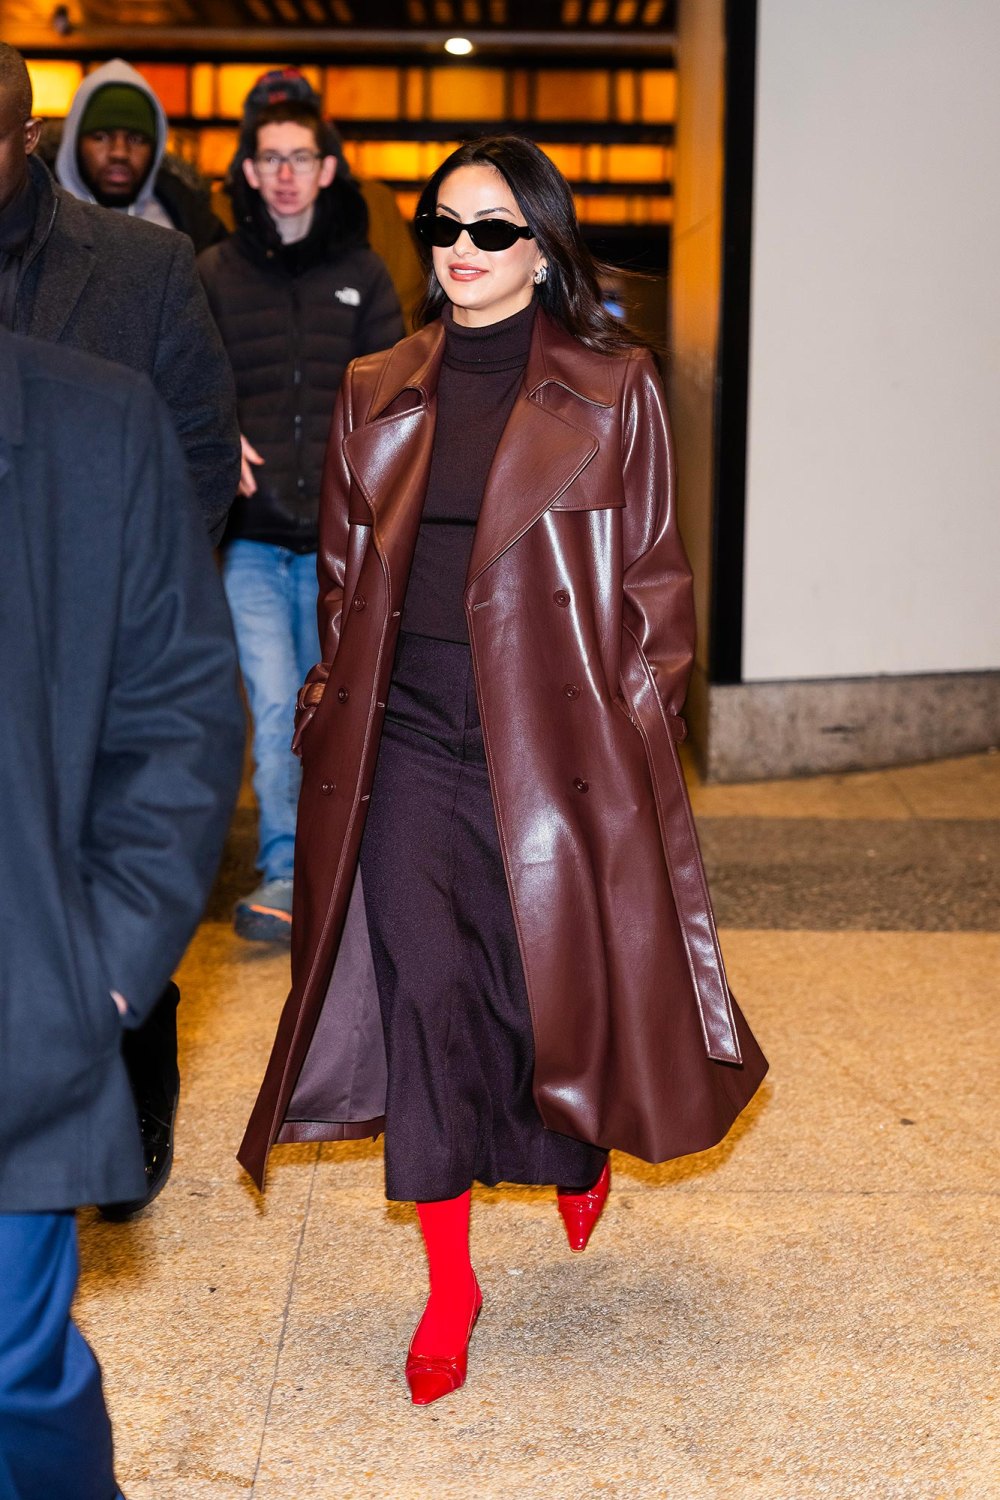 Camila Mendes greift Jennifer Anistons Friends-Garderobe in den neuesten NYC-Looks auf